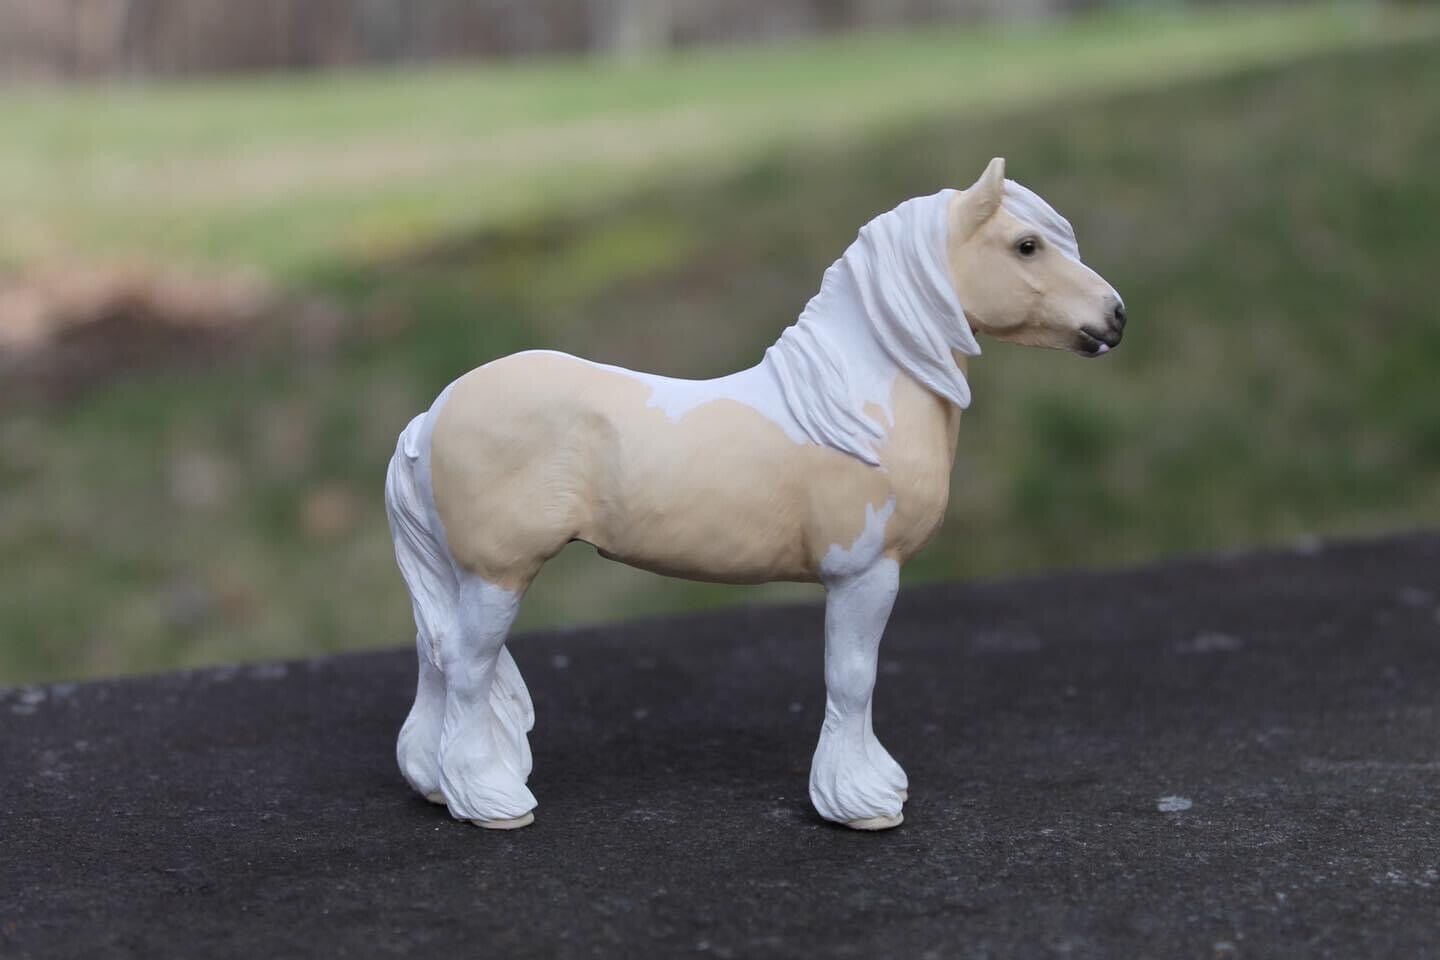 Artist Resin Model Horse Harry Sculpted By Josine Vingerling